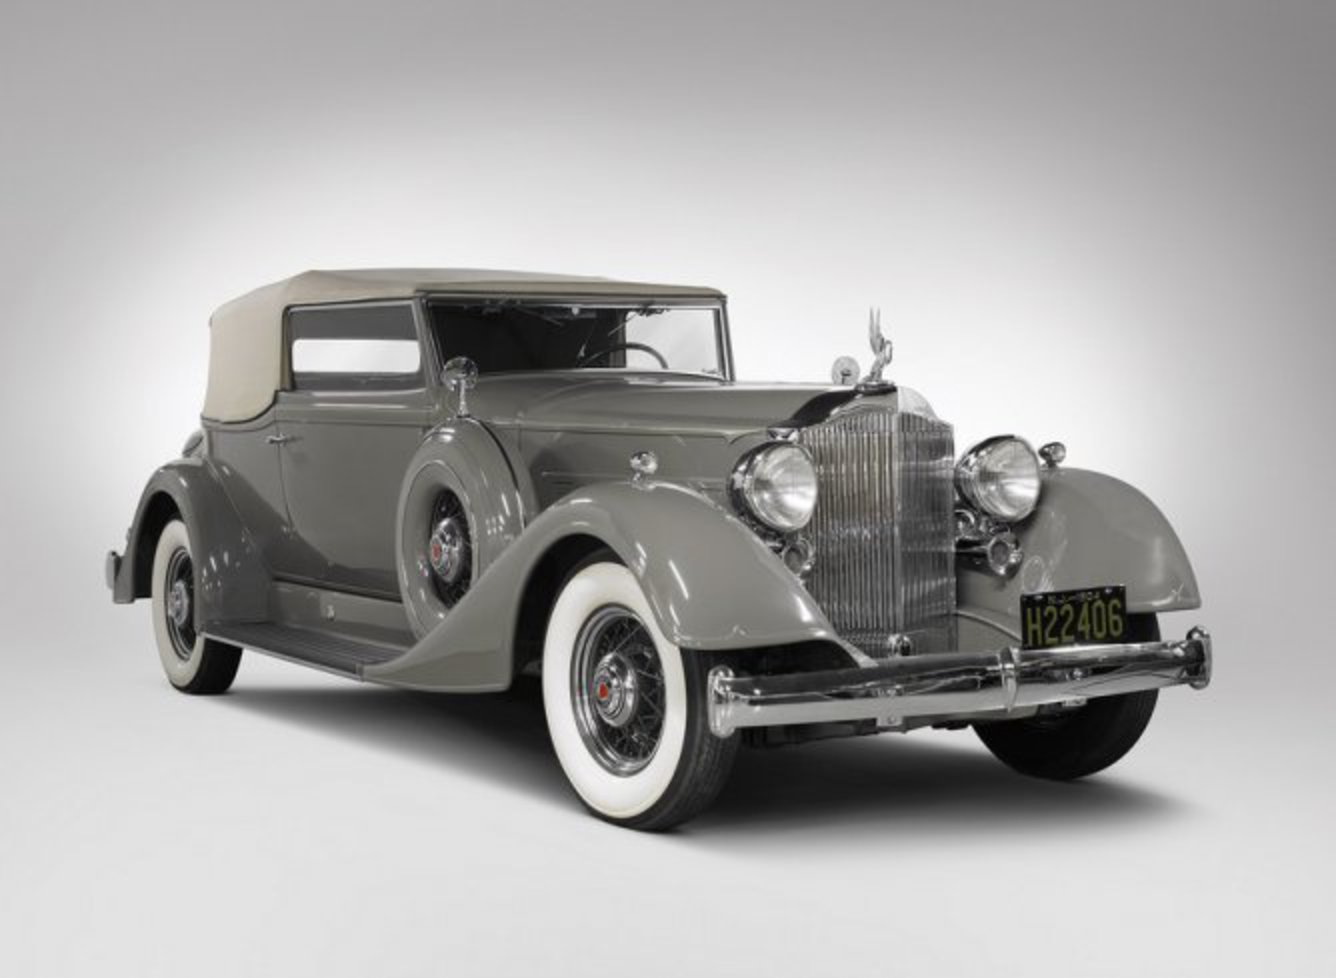 1934 Packard Super Eight Convertible Victoria - 1 â€” Ð¤Ð¾Ñ‚Ð¾Ð³Ñ€Ð°Ñ„Ð¸Ð¸ Ð¸Ð· ...